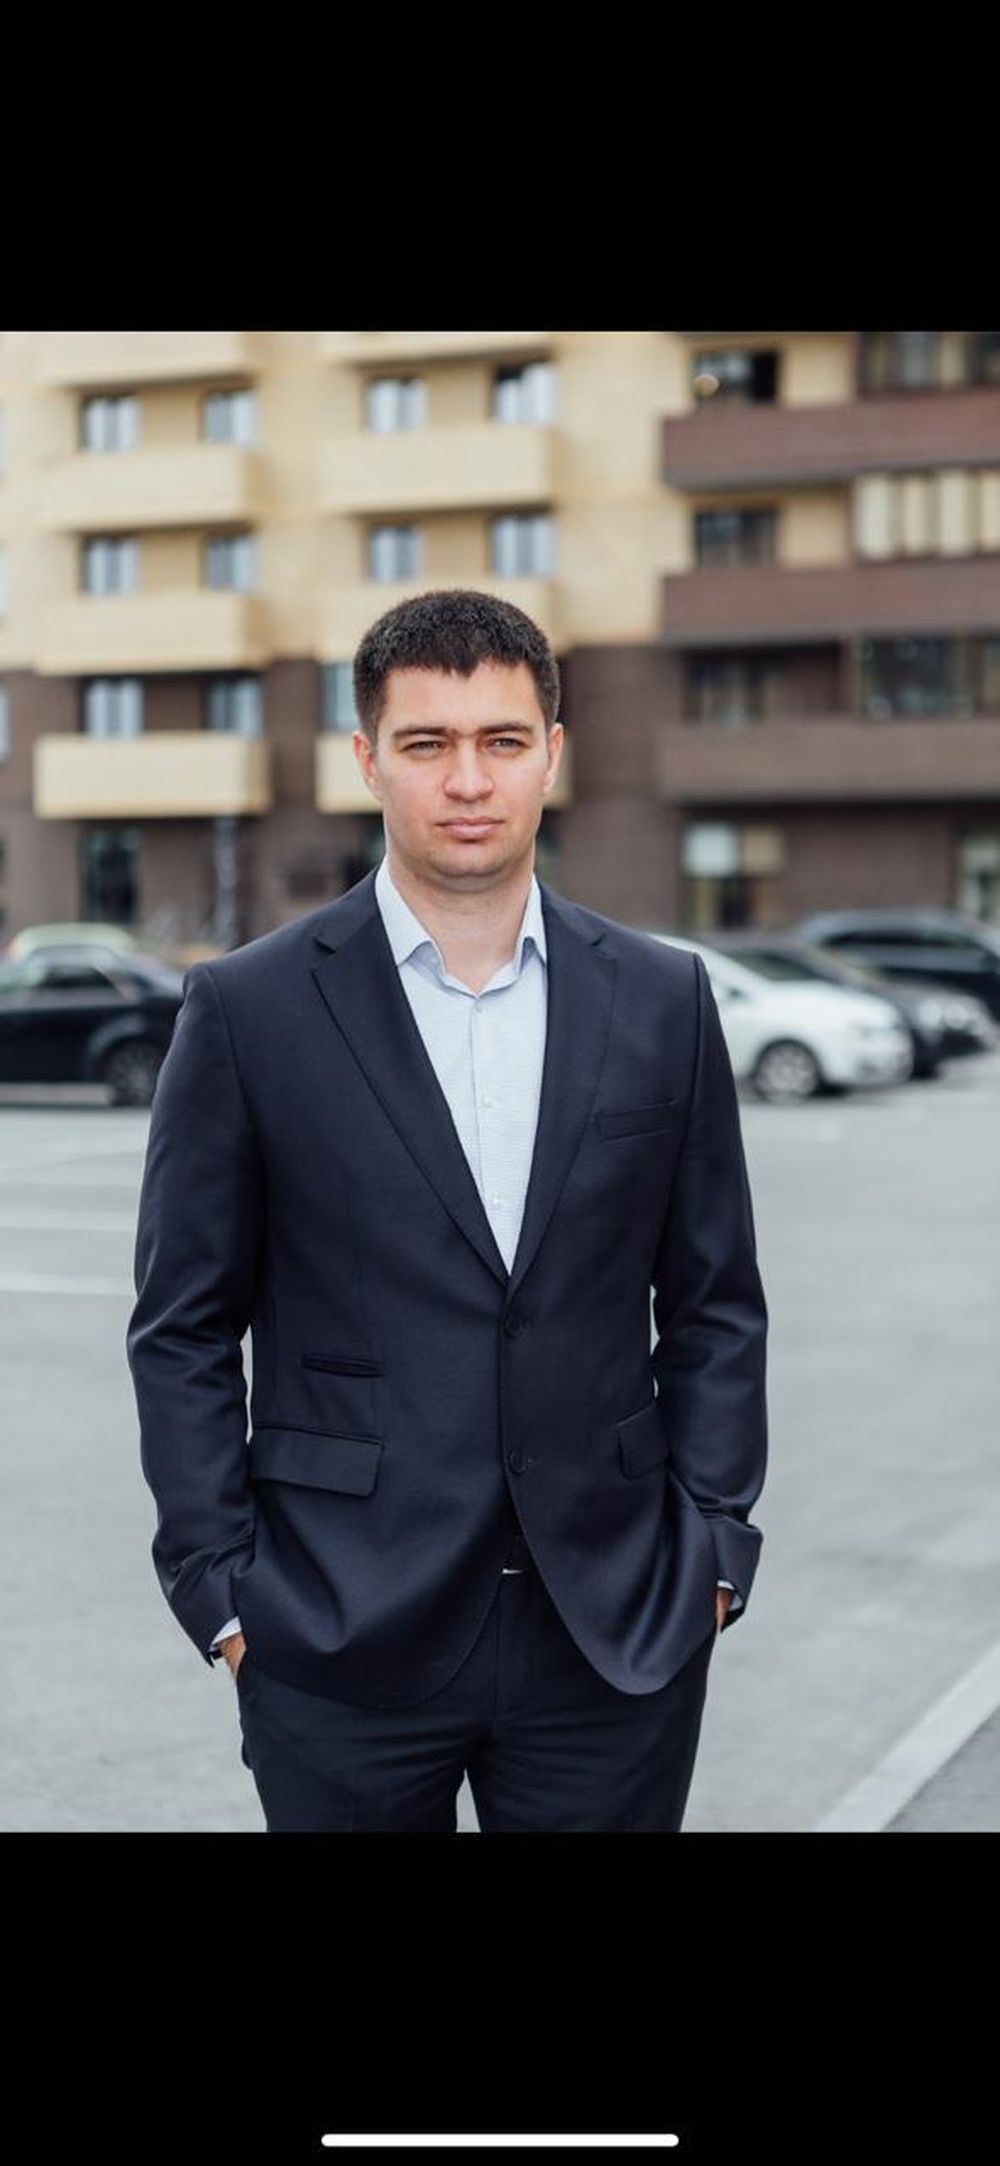 Реальная стоимость эскроу-счетов составила 1% от цены жилья – Александр Гайдуков